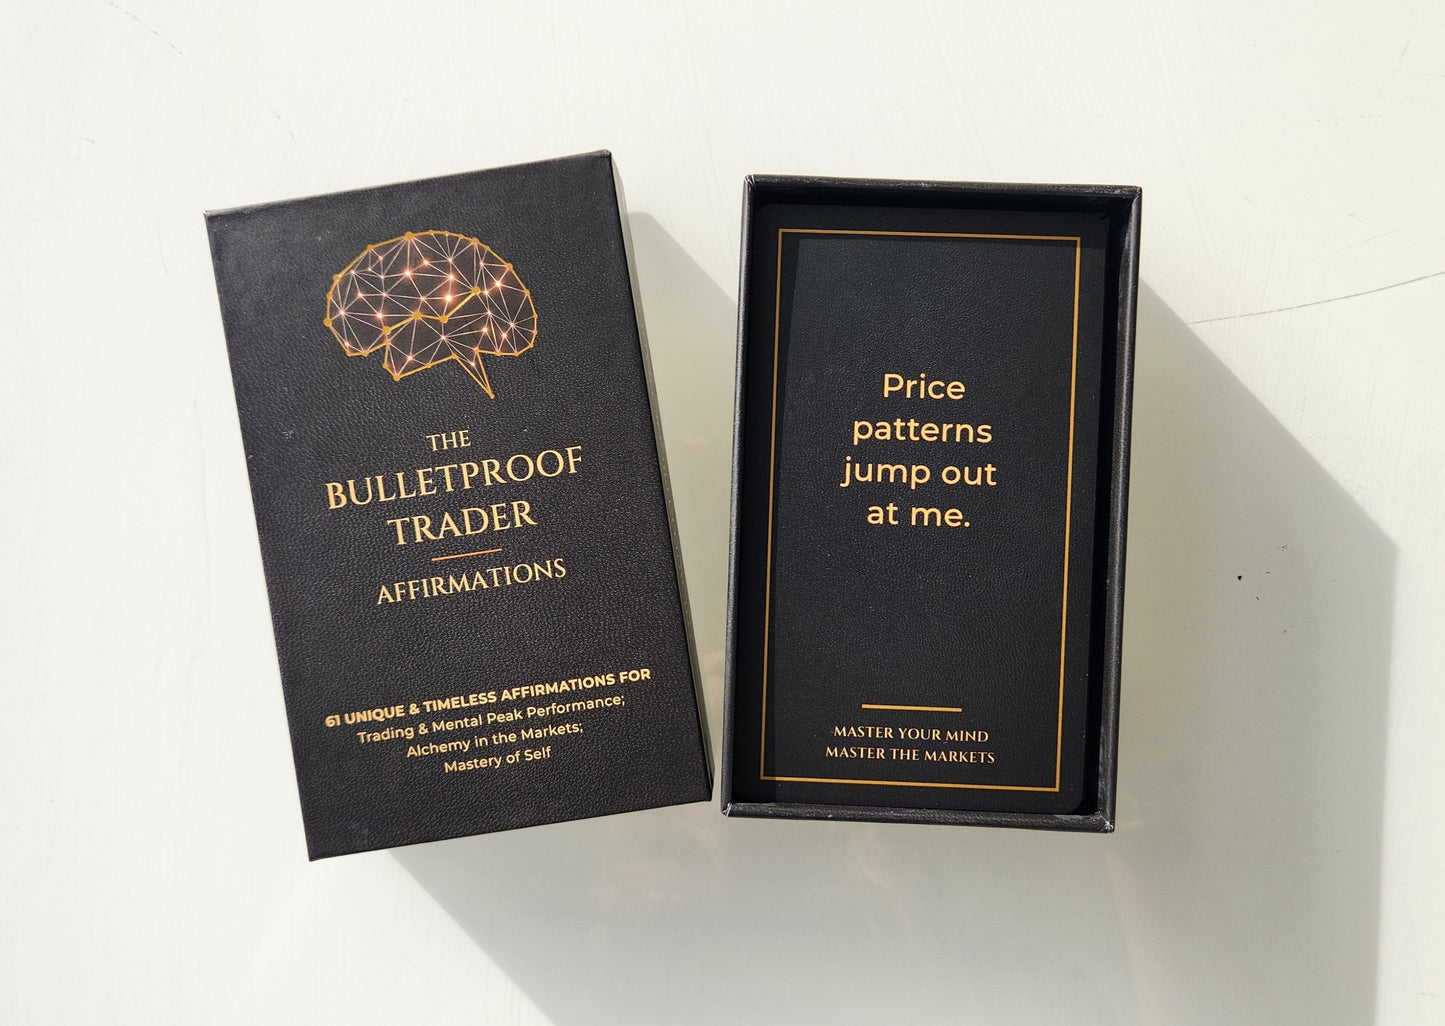 The Bulletproof Trader Affirmation Cards